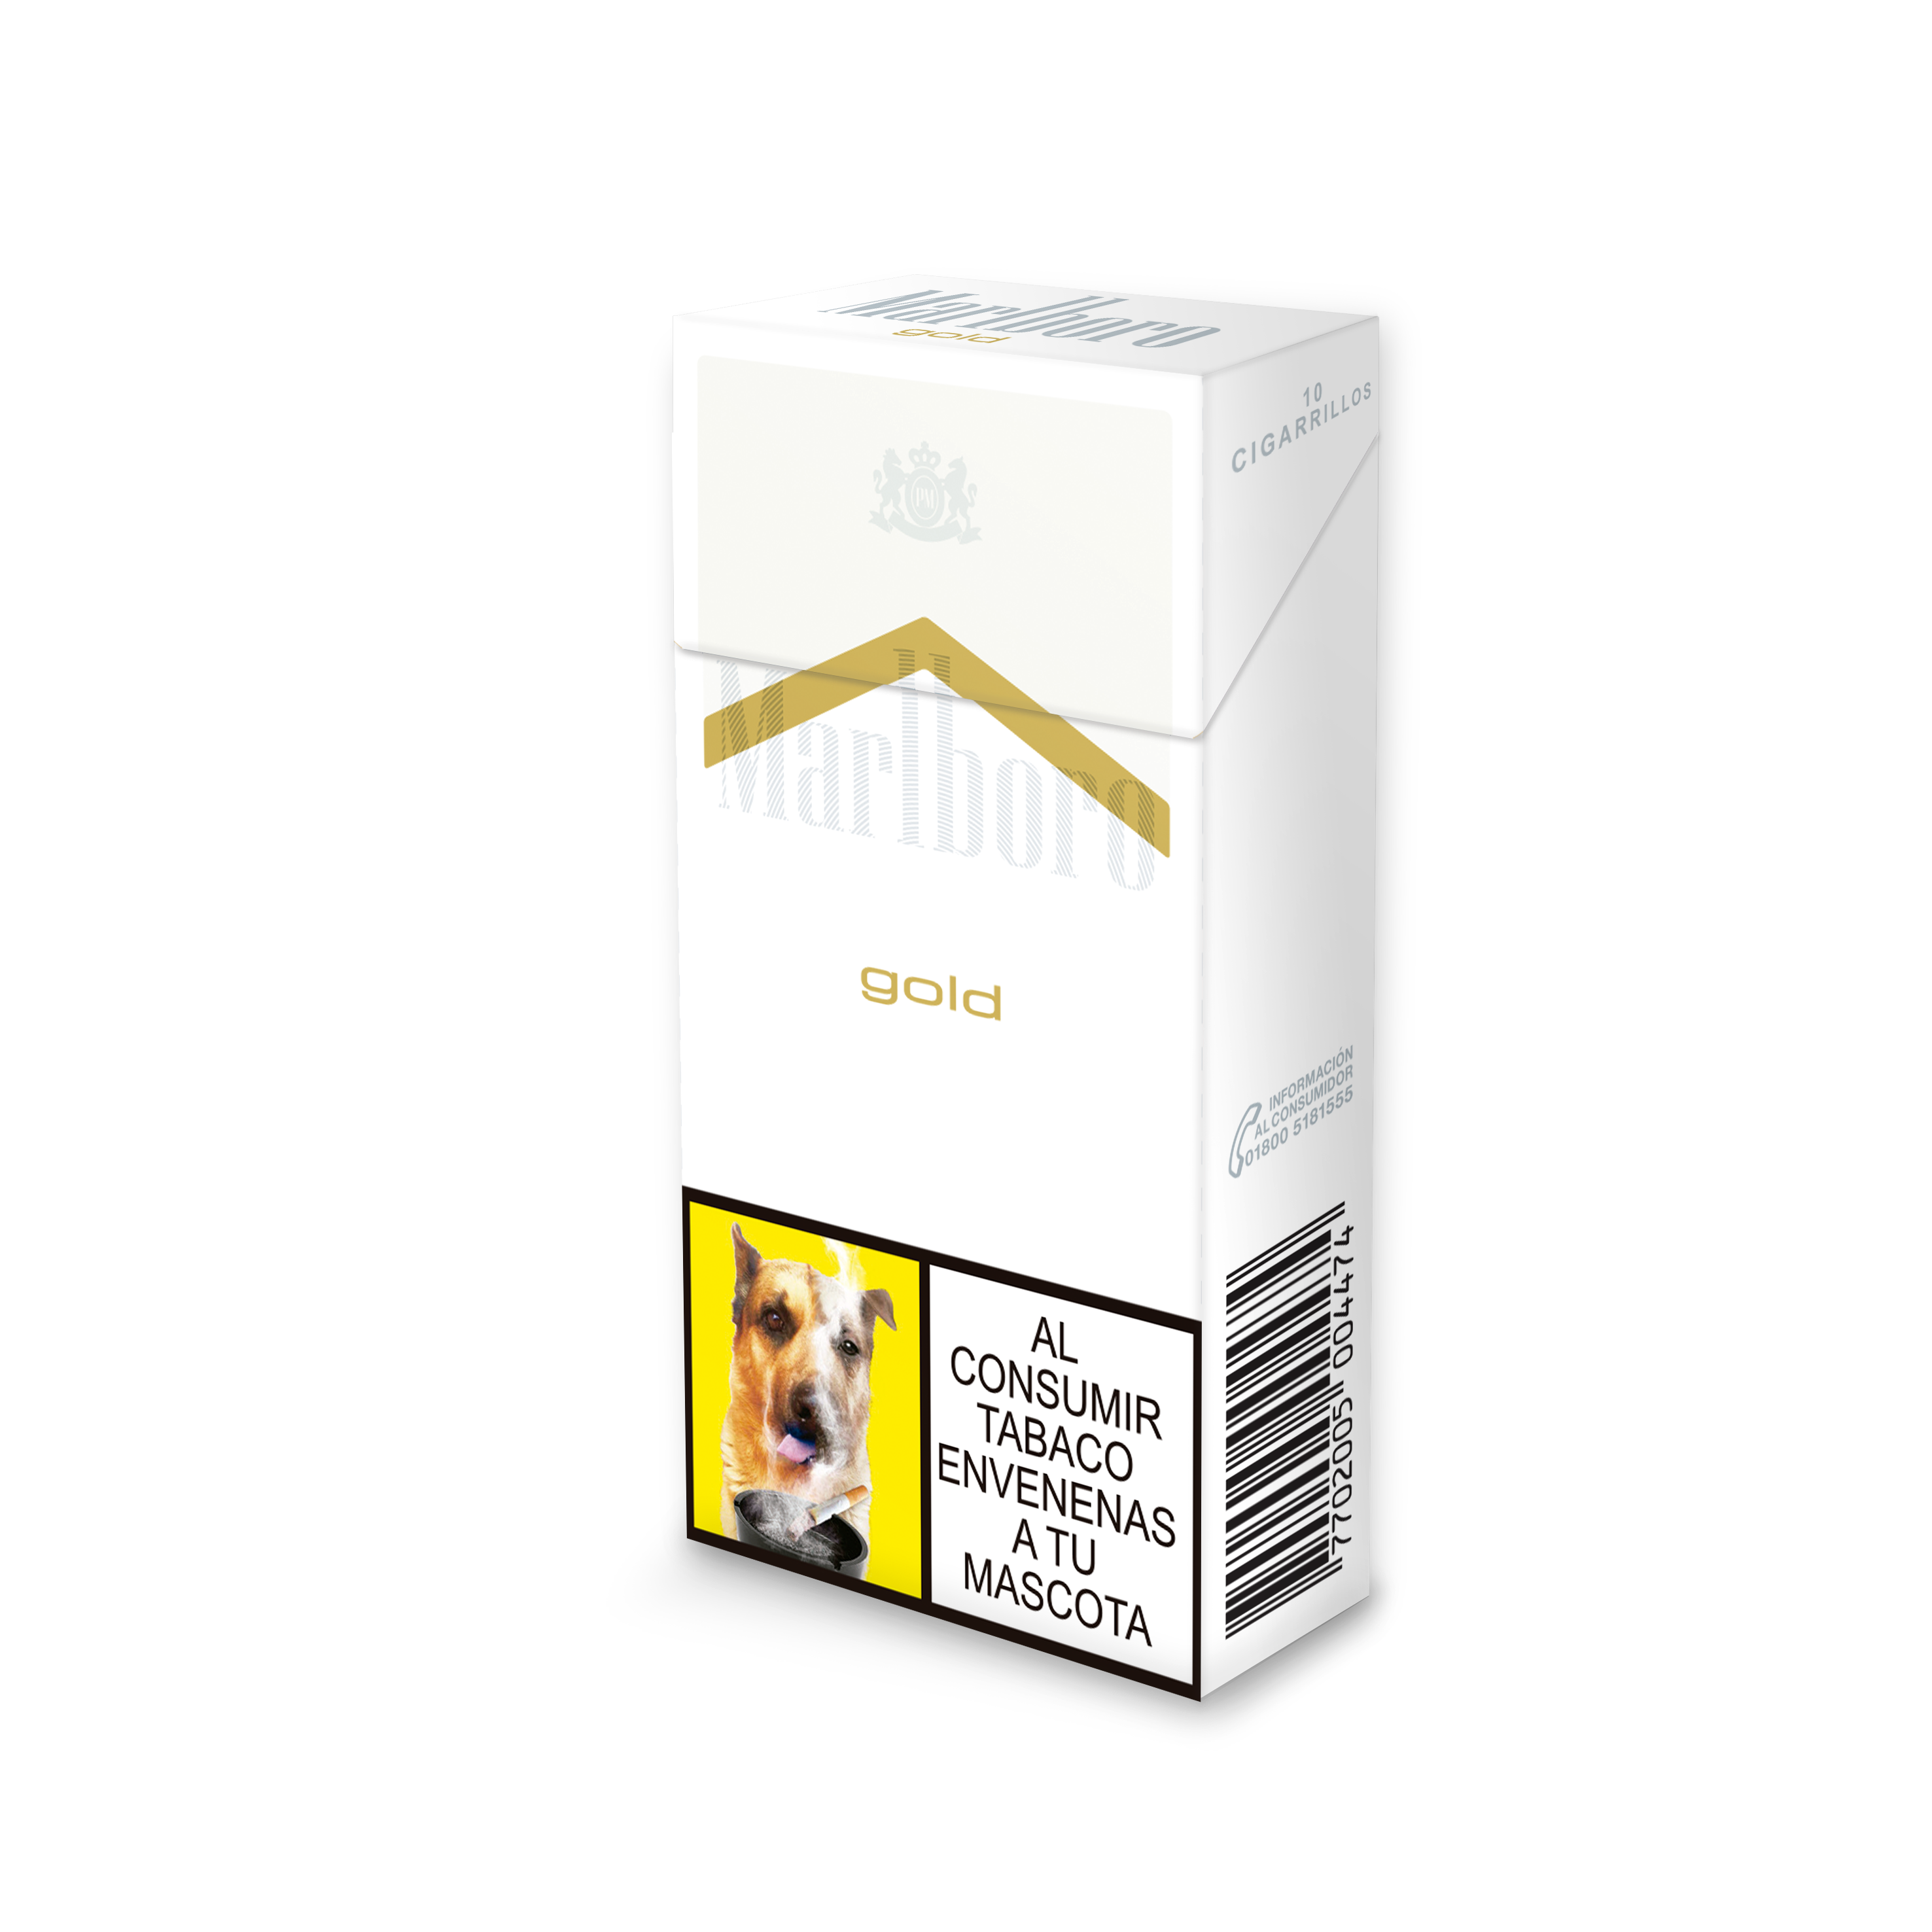 Cigarrillo Marlboro Gold Original Ks Box Nueva Presentación x10cig